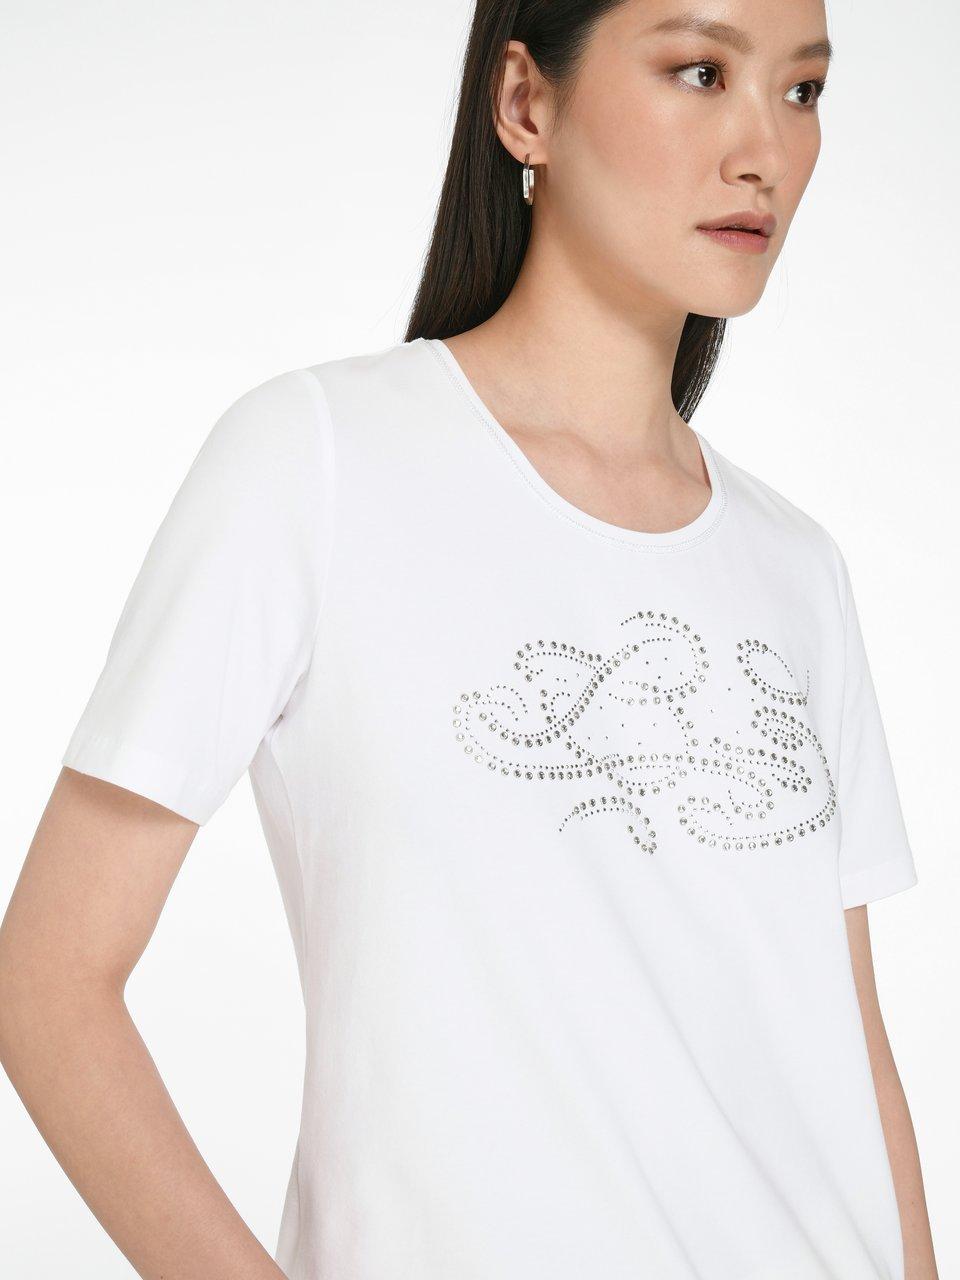 Teasing Seletøj sandsynligt Peter Hahn - T-shirt med rund hals og korte ærmer - Hvid/sølv